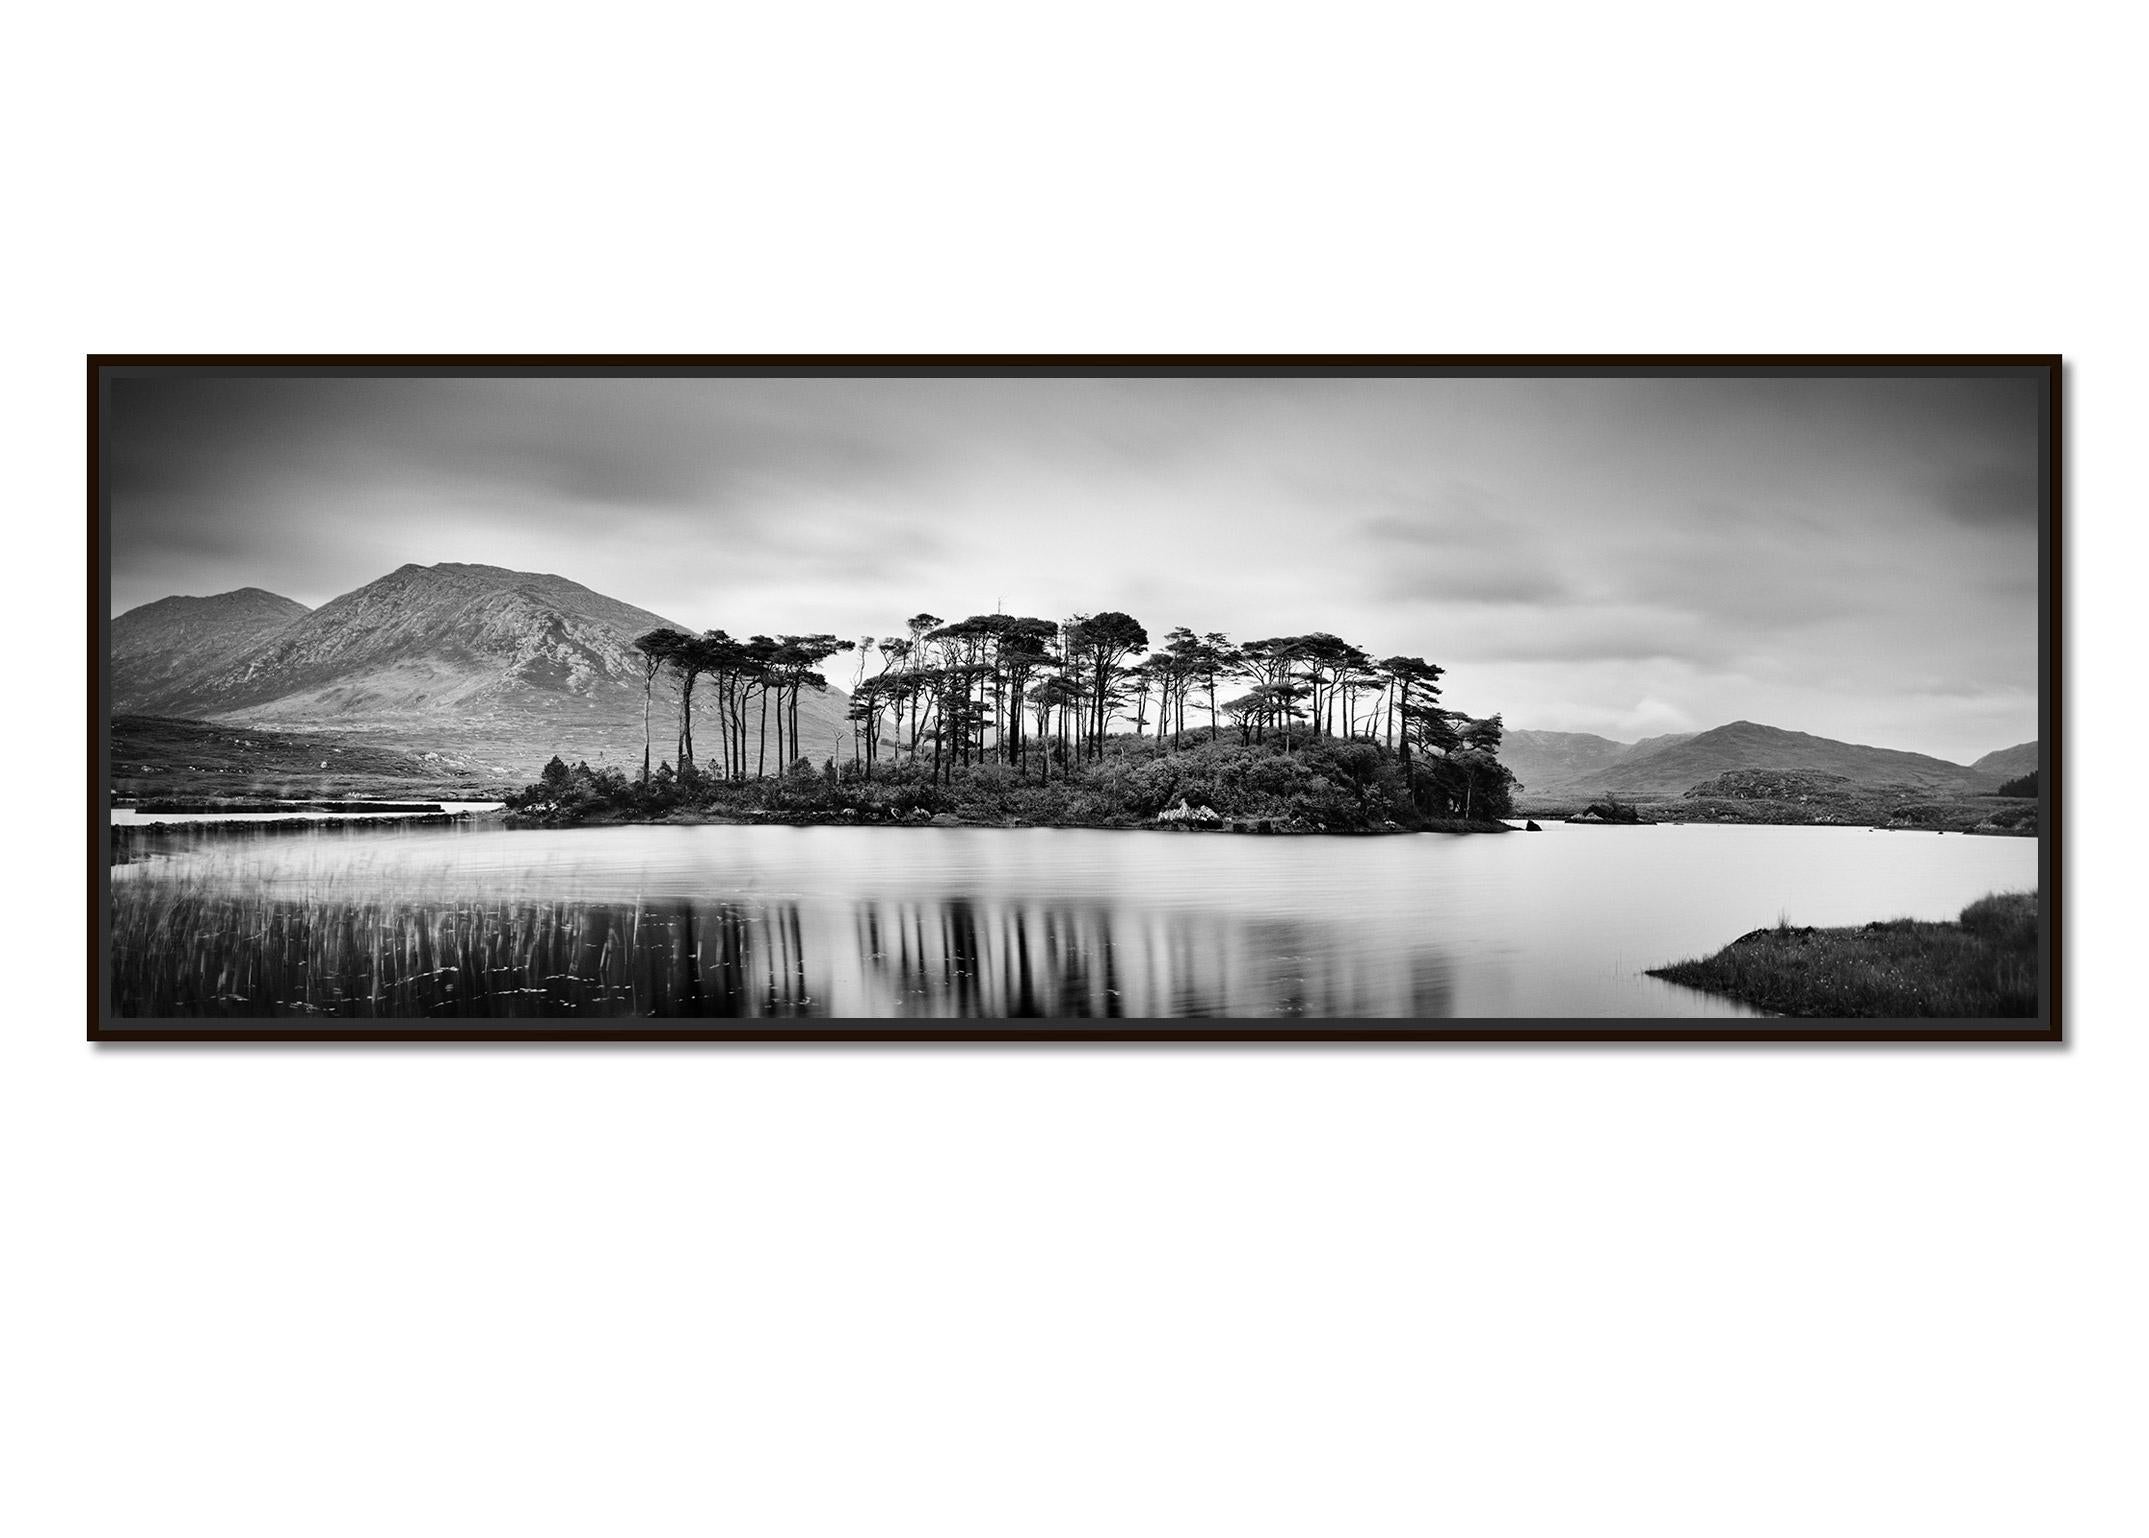 Bauminsel Panorama, zeitgenössischer Schwarz-Weiß-Fotodruck mit Wasserlandschaft – Photograph von Gerald Berghammer